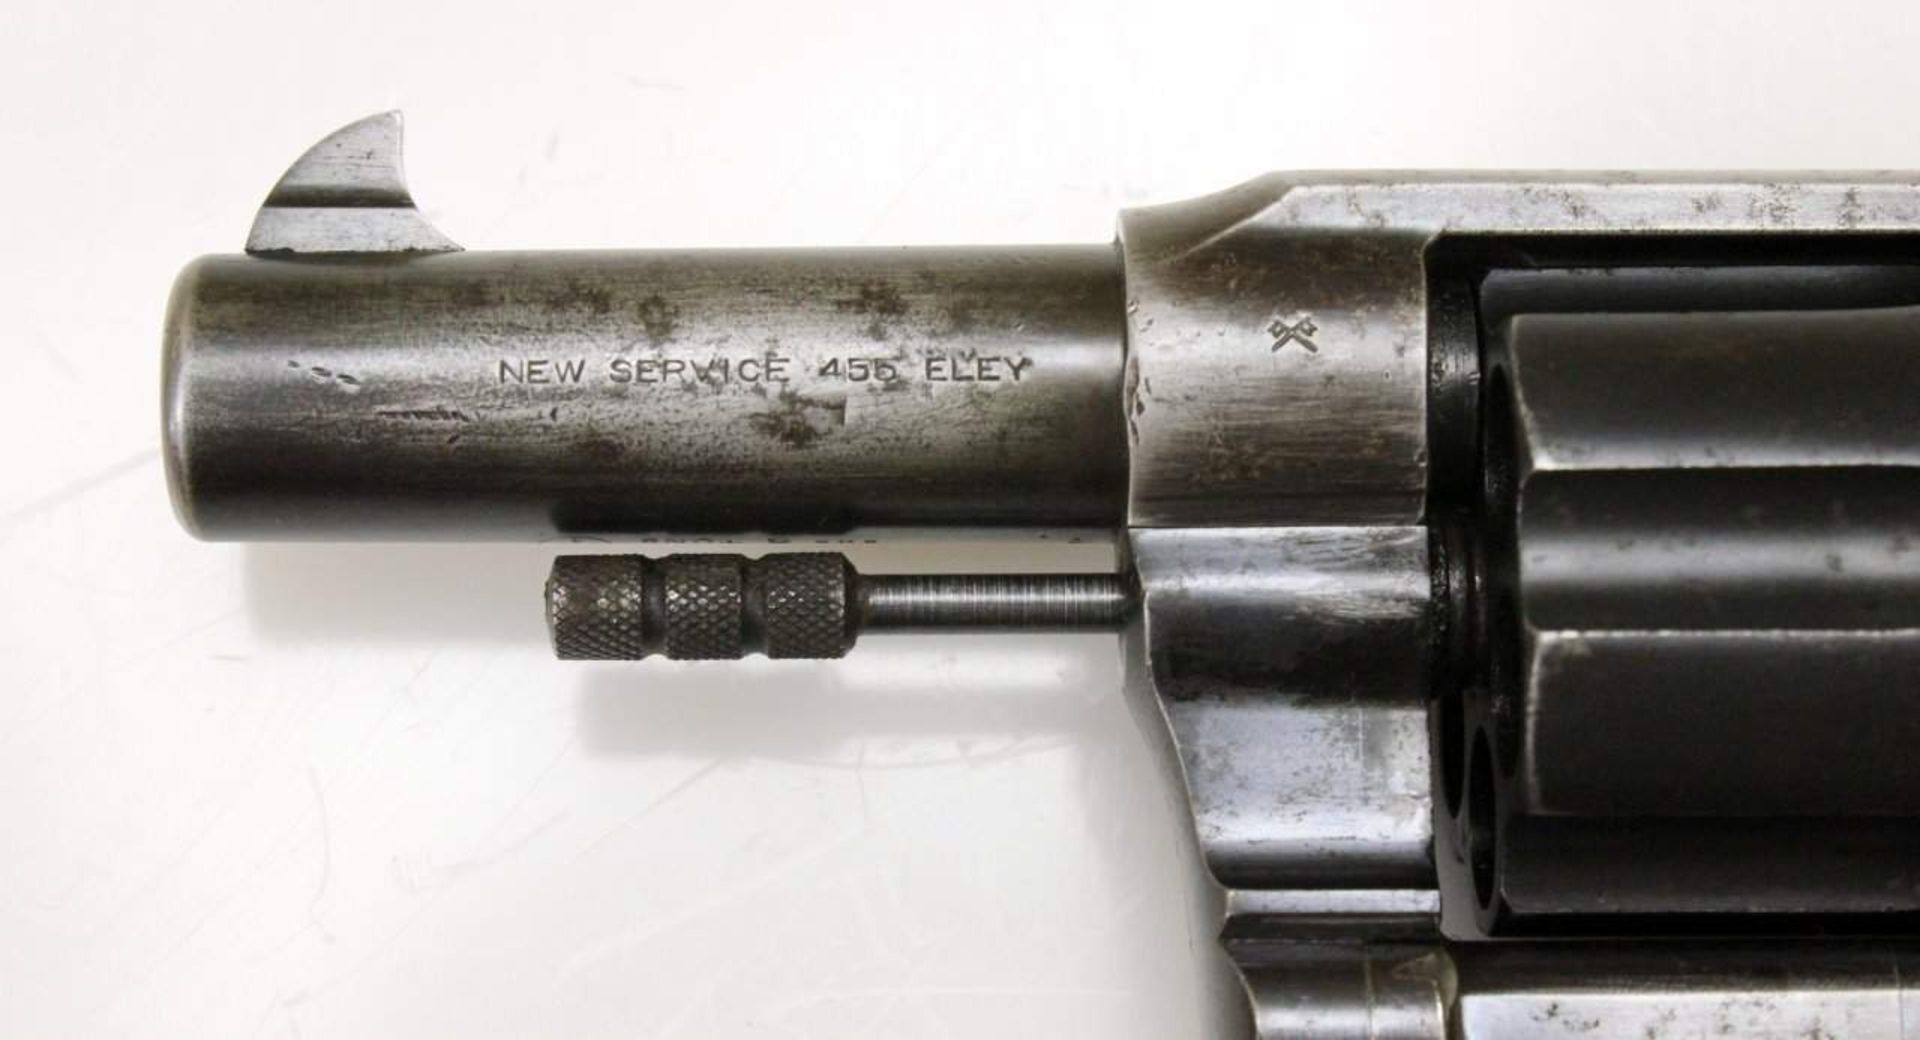 Revolver Colt, Modell: New Service Cal. .455 Eley, S/N: 101702, Lauf spiegelblank, Lauflänge: 3,25", - Bild 5 aus 8